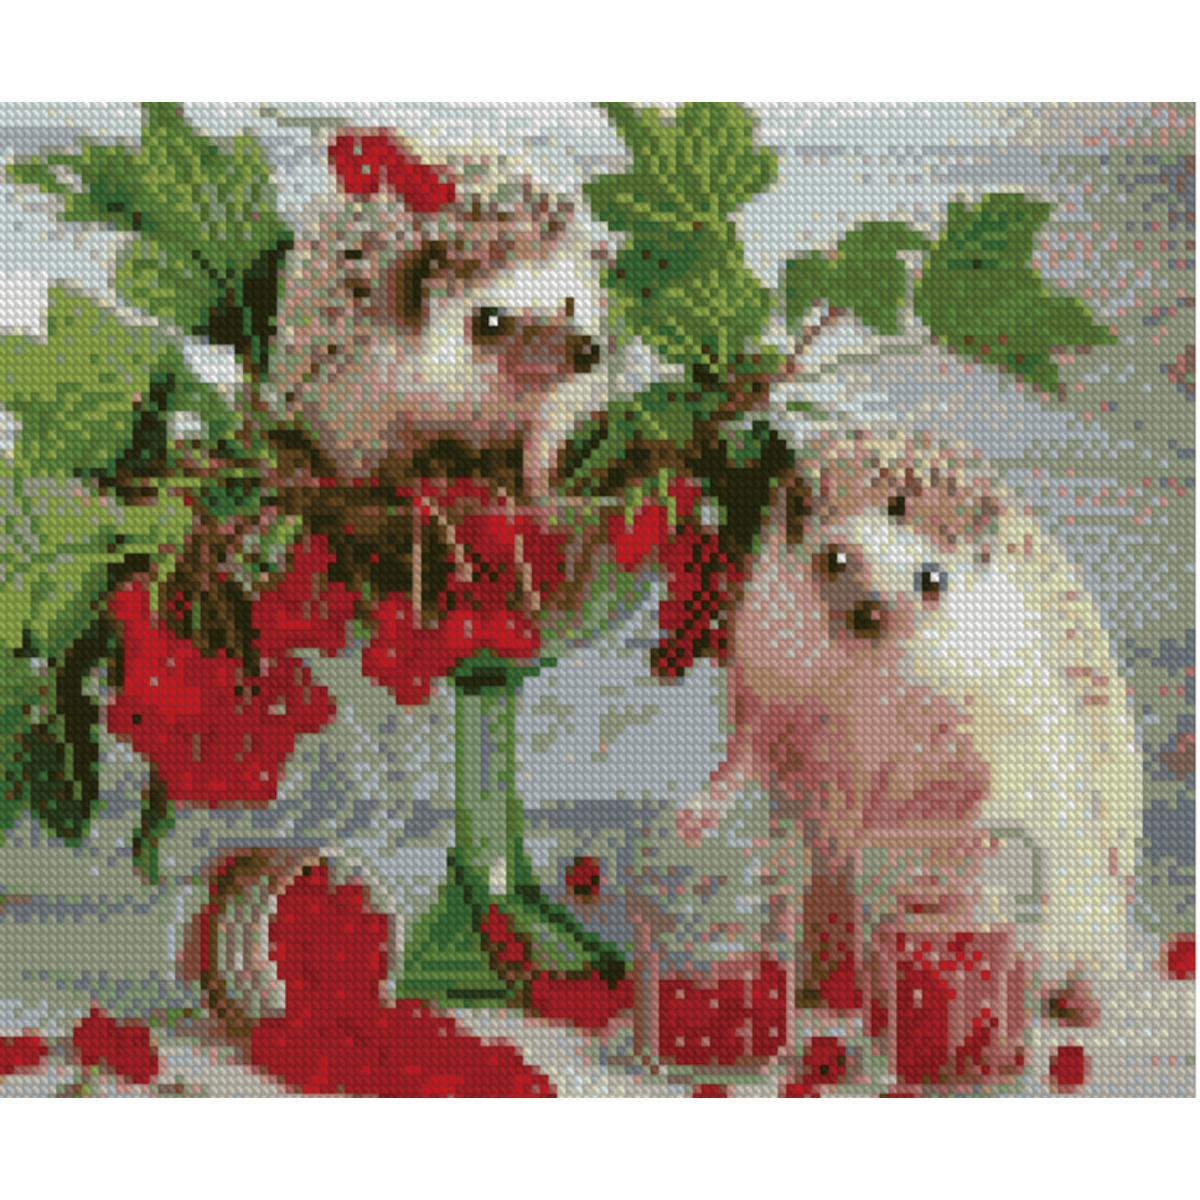 Diamond mosaic Premium HX198 "Viburnum for hedgehogs", size 30x40 cm